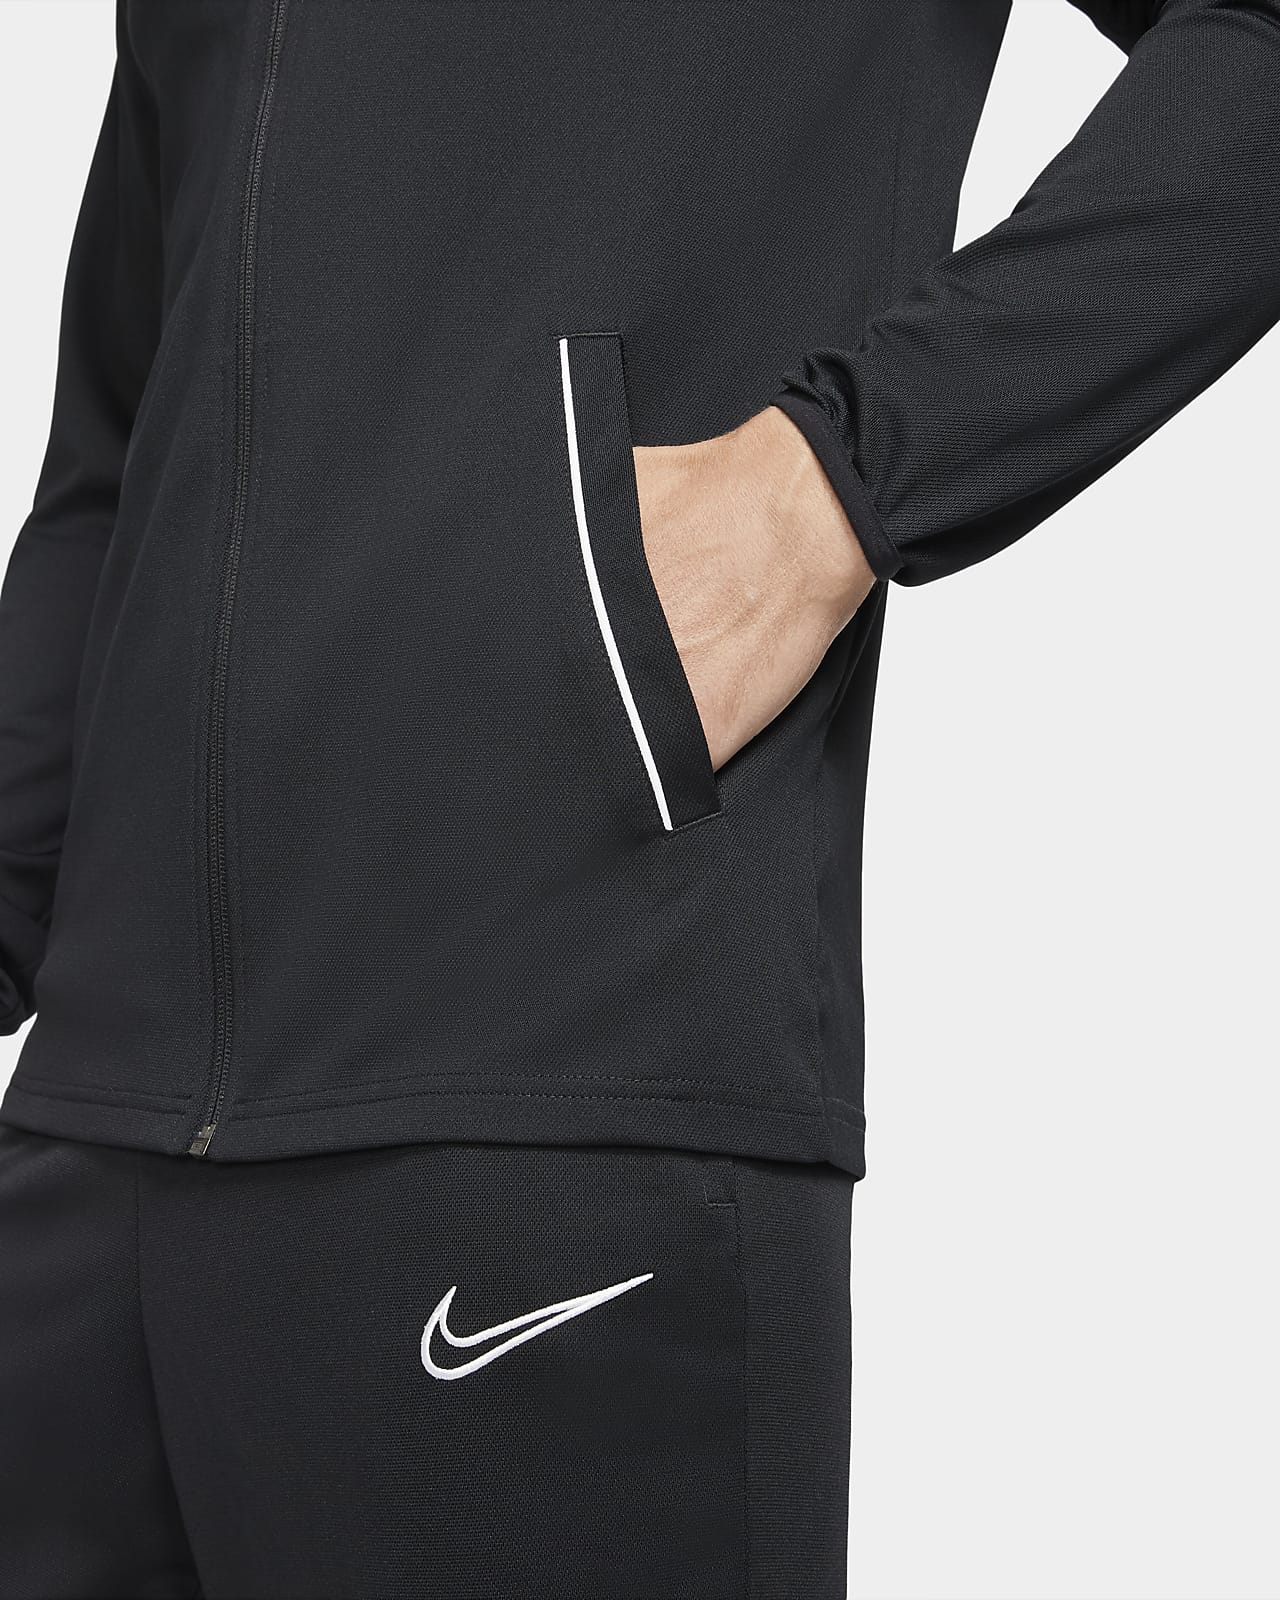 Nike公式 ナイキ Dri Fit アカデミー メンズ ニット サッカートラックスーツ オンラインストア 通販サイト